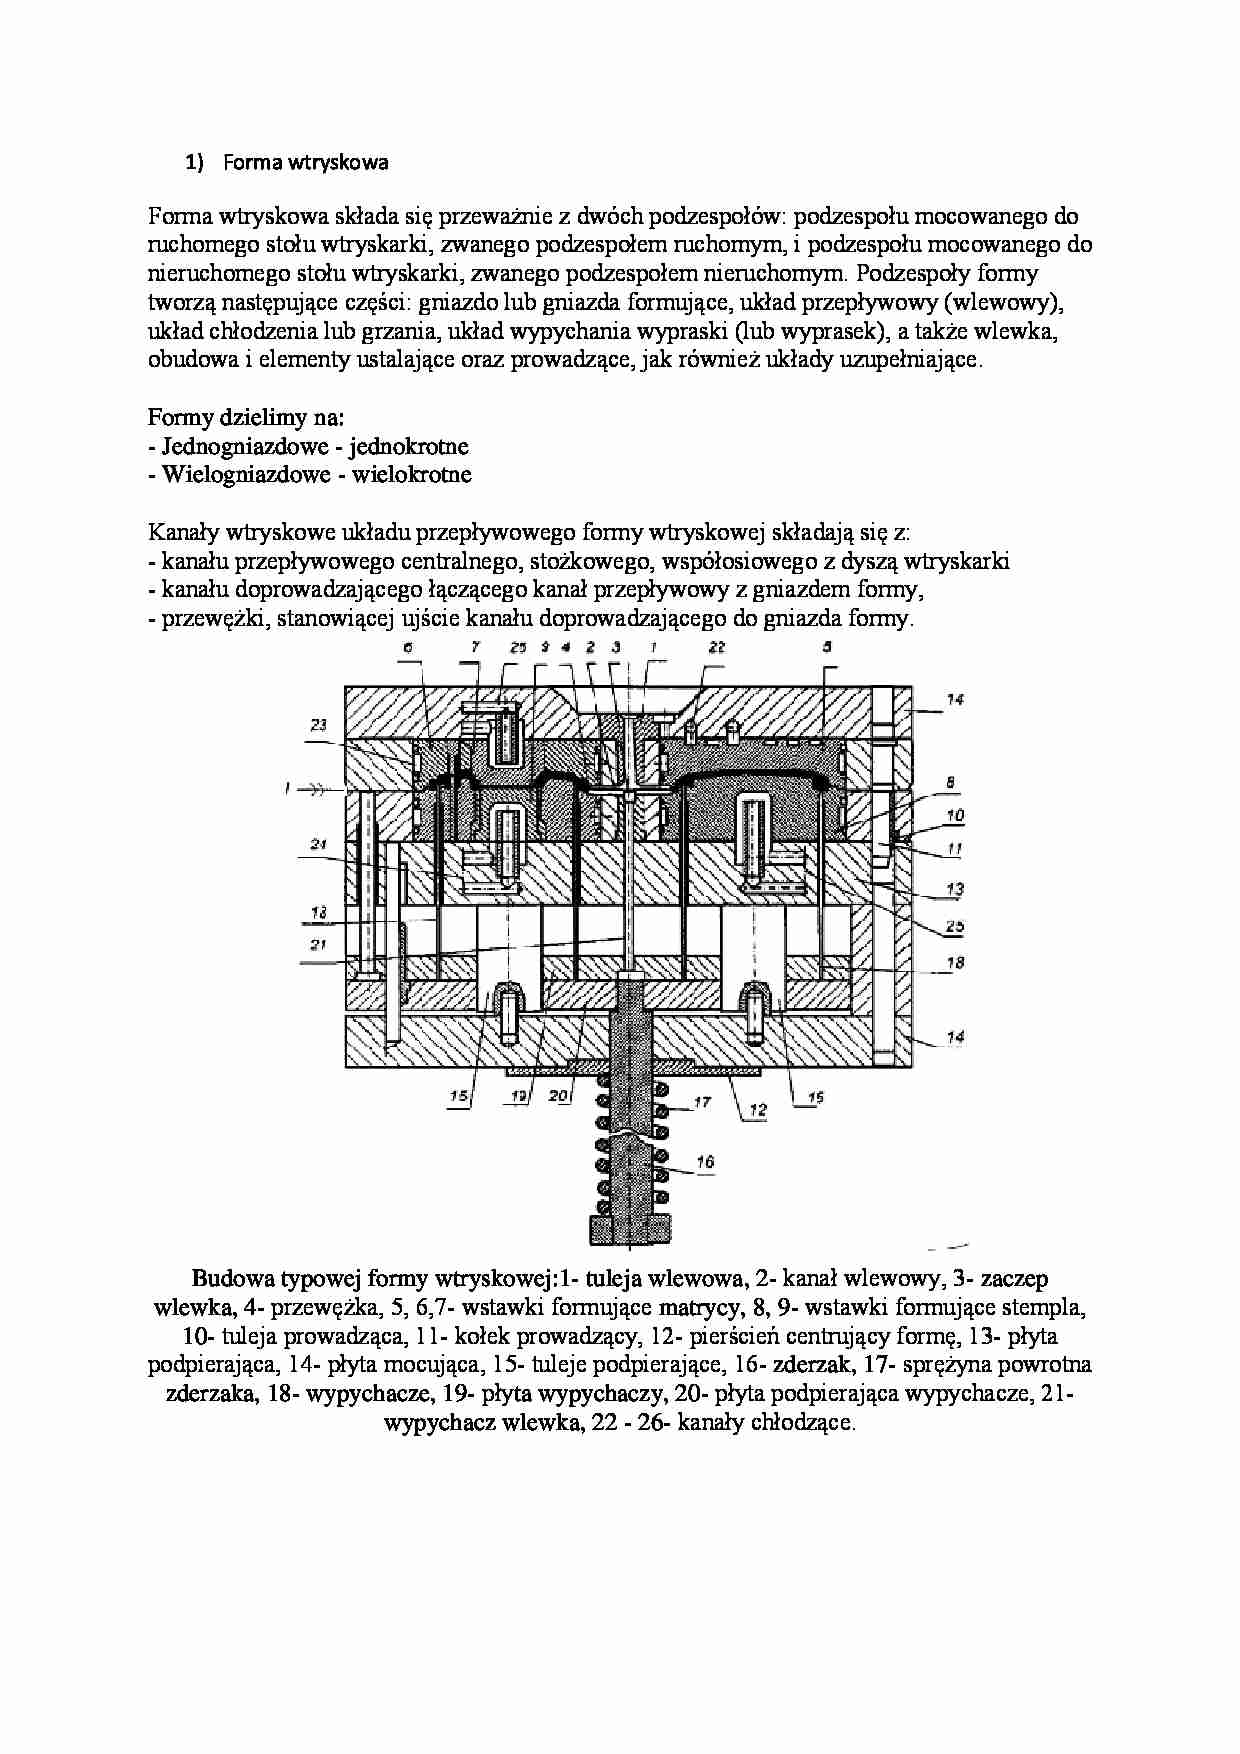 Forma wtryskowa-opracowanie - strona 1